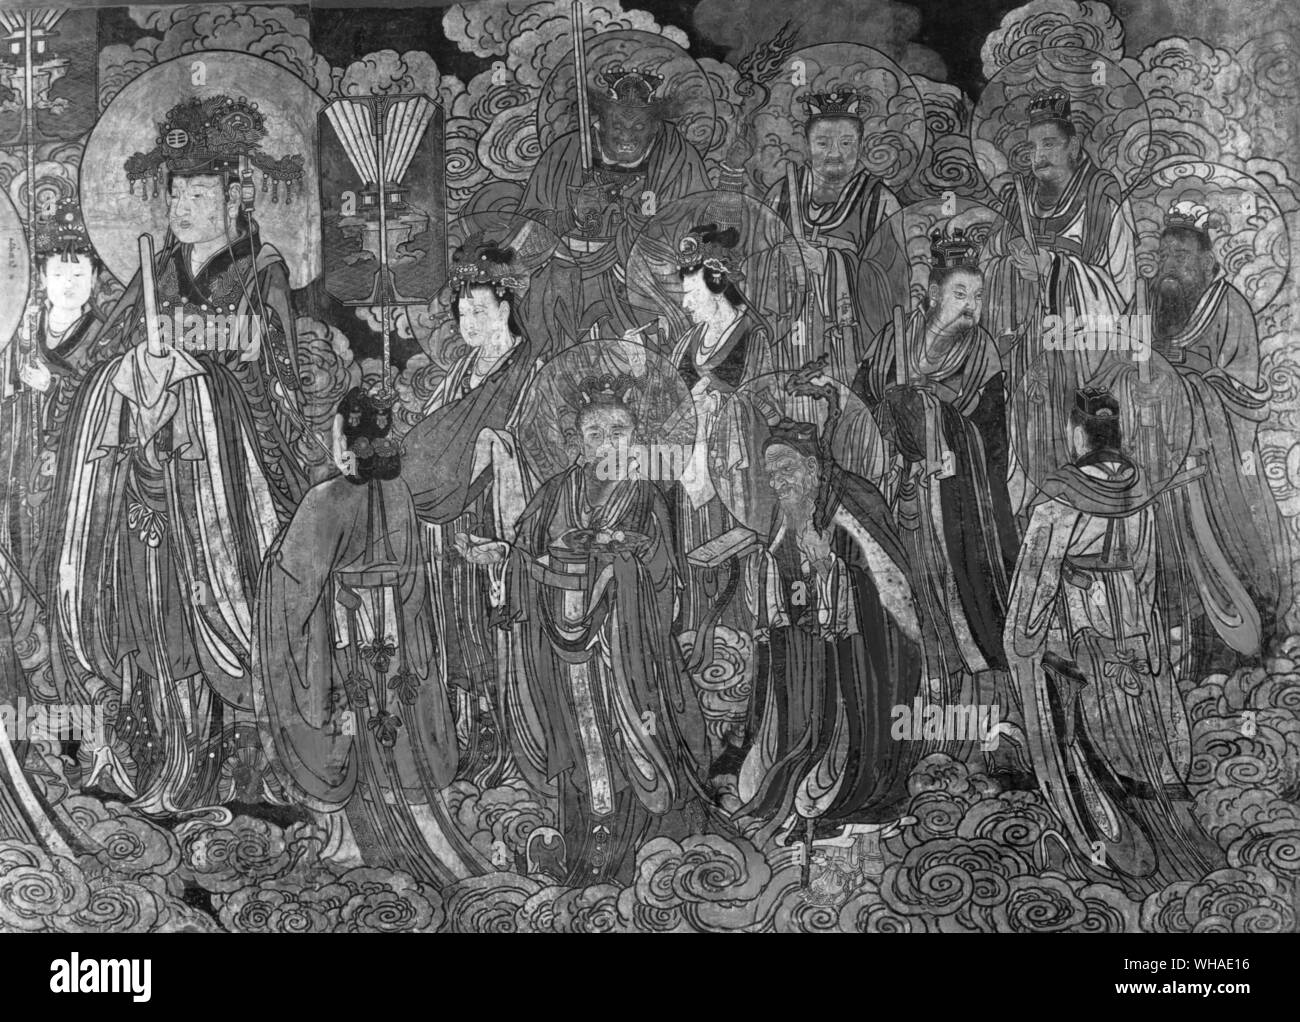 Details Der Herr der Nördlichen Pendelarm Fresko aus der taoistischen Tempel in der südlichen Provinz Shansi China. 14. jahrhundert Stockfoto